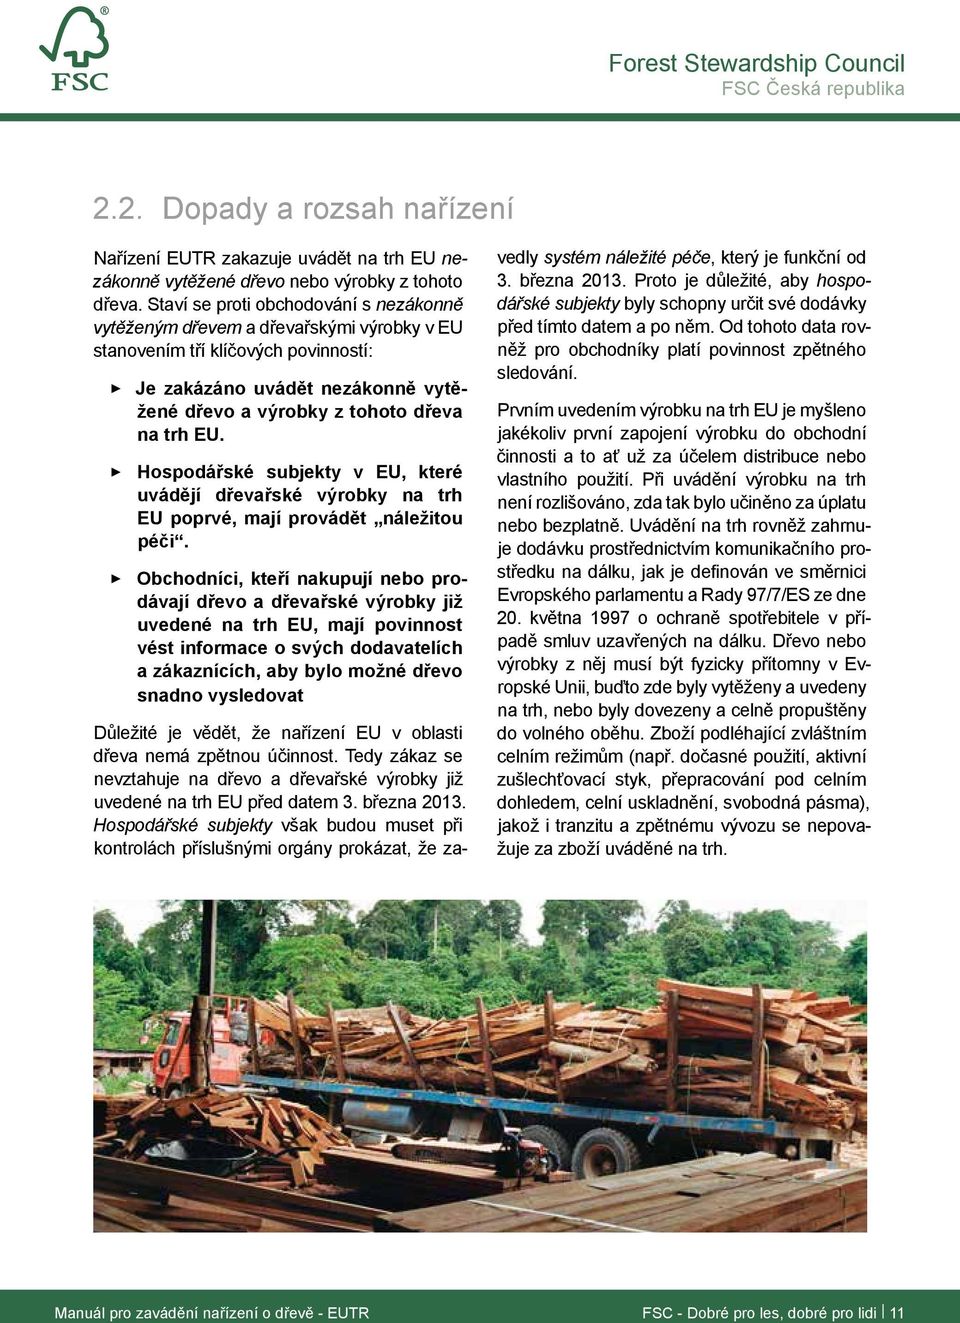 Hospodářské subjekty v EU, které uvádějí dřevařské výrobky na trh EU poprvé, mají provádět náležitou péči.